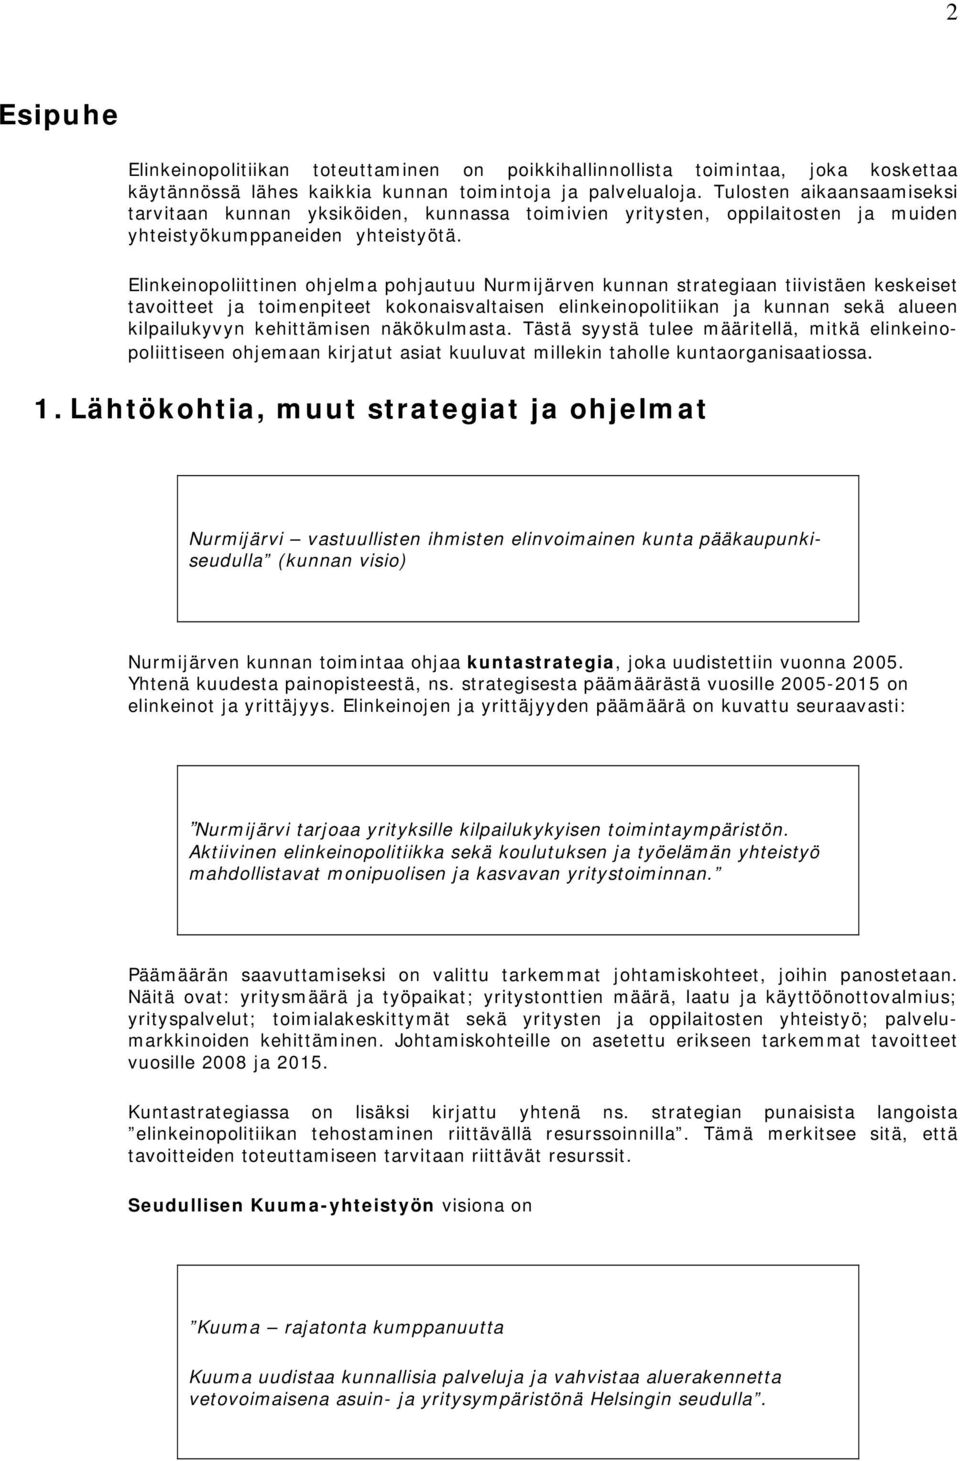 Elinkeinopoliittinen ohjelma pohjautuu Nurmijärven kunnan strategiaan tiivistäen keskeiset tavoitteet ja toimenpiteet kokonaisvaltaisen elinkeinopolitiikan ja kunnan sekä alueen kilpailukyvyn